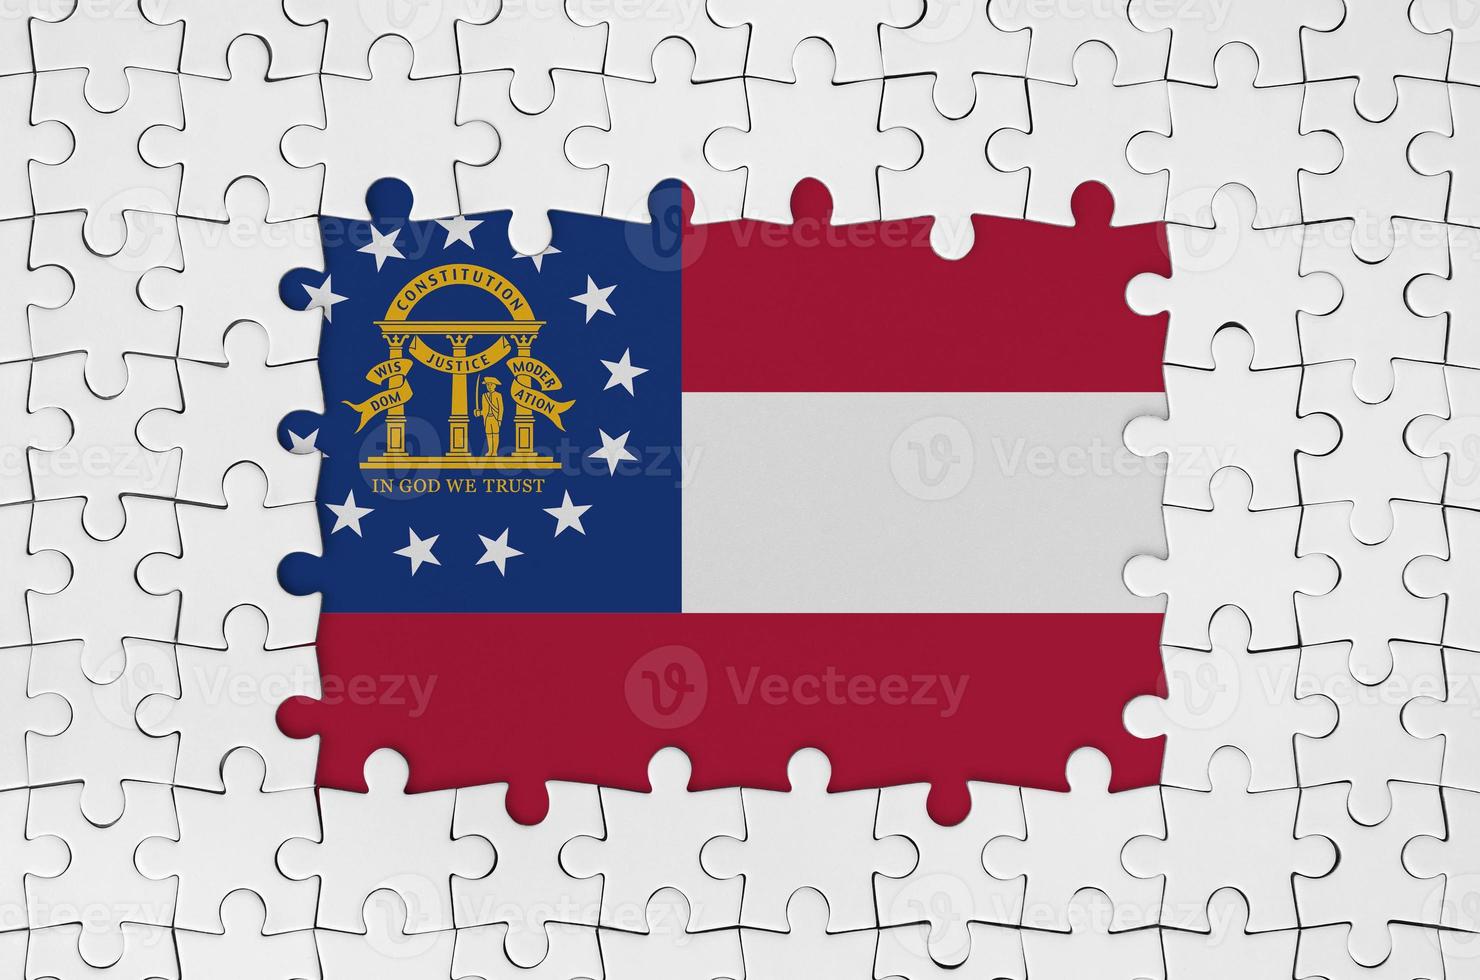 bandeira do estado da georgia eua no quadro de peças de quebra-cabeça brancas com parte central ausente foto